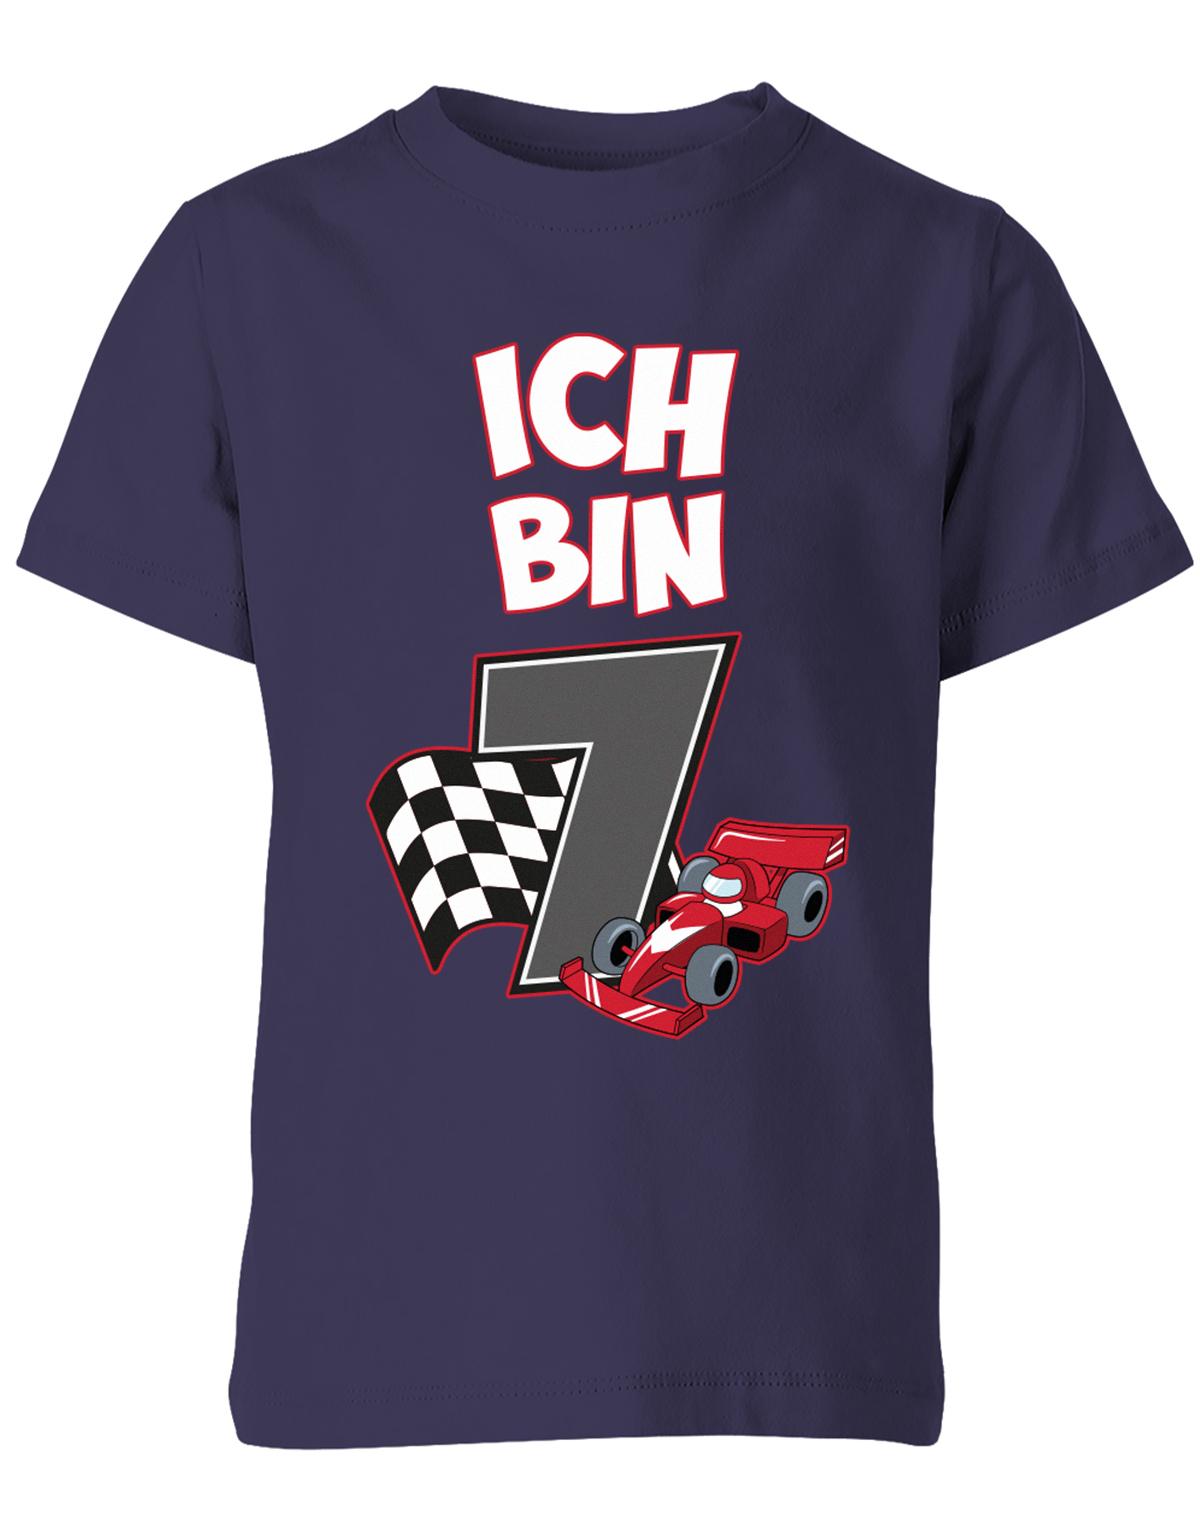 ich-bin-7-autorennen-rennwagen-geburtstag-rennfahrer-kinder-shirt-navy